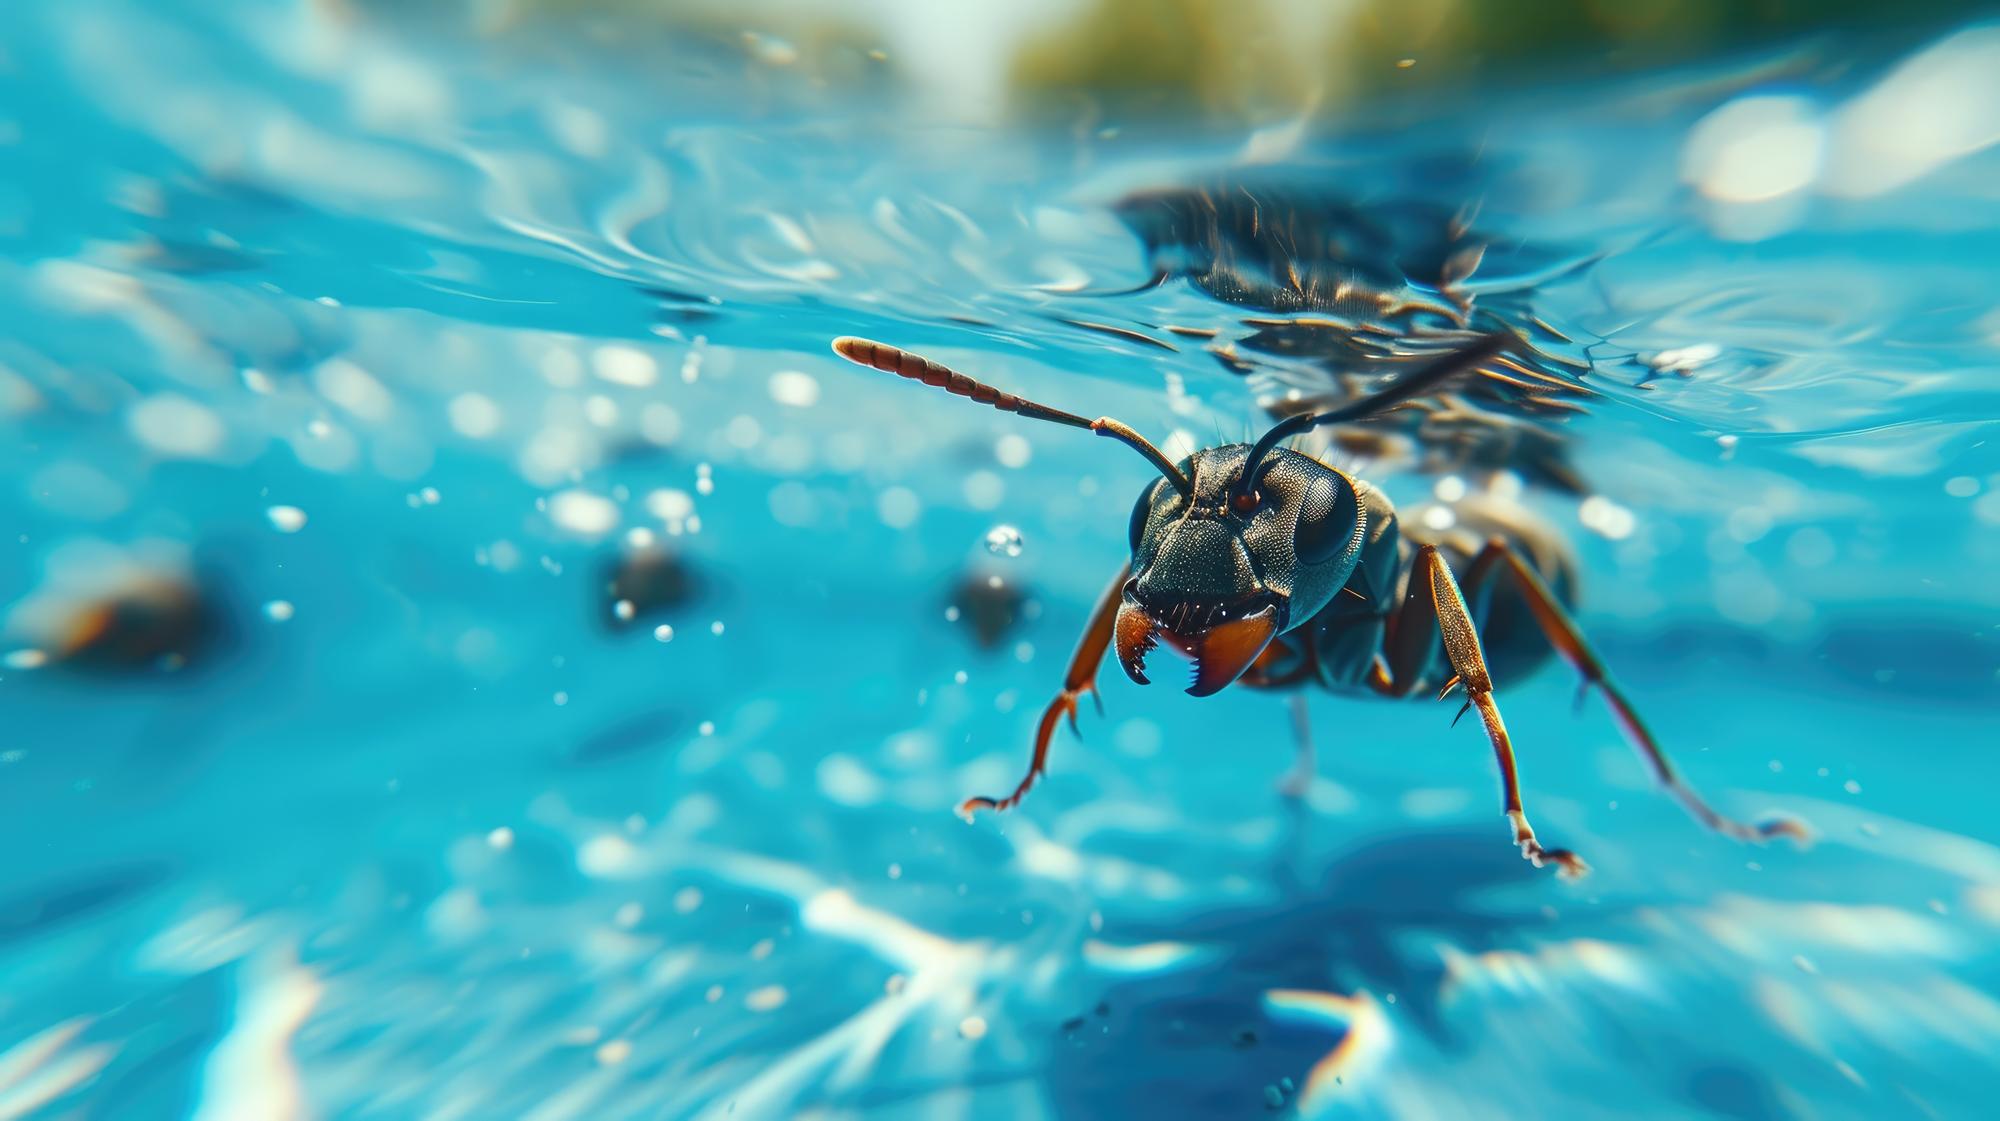 Momento gracioso capturado hormiga en la piscina hace una inmersión profunda